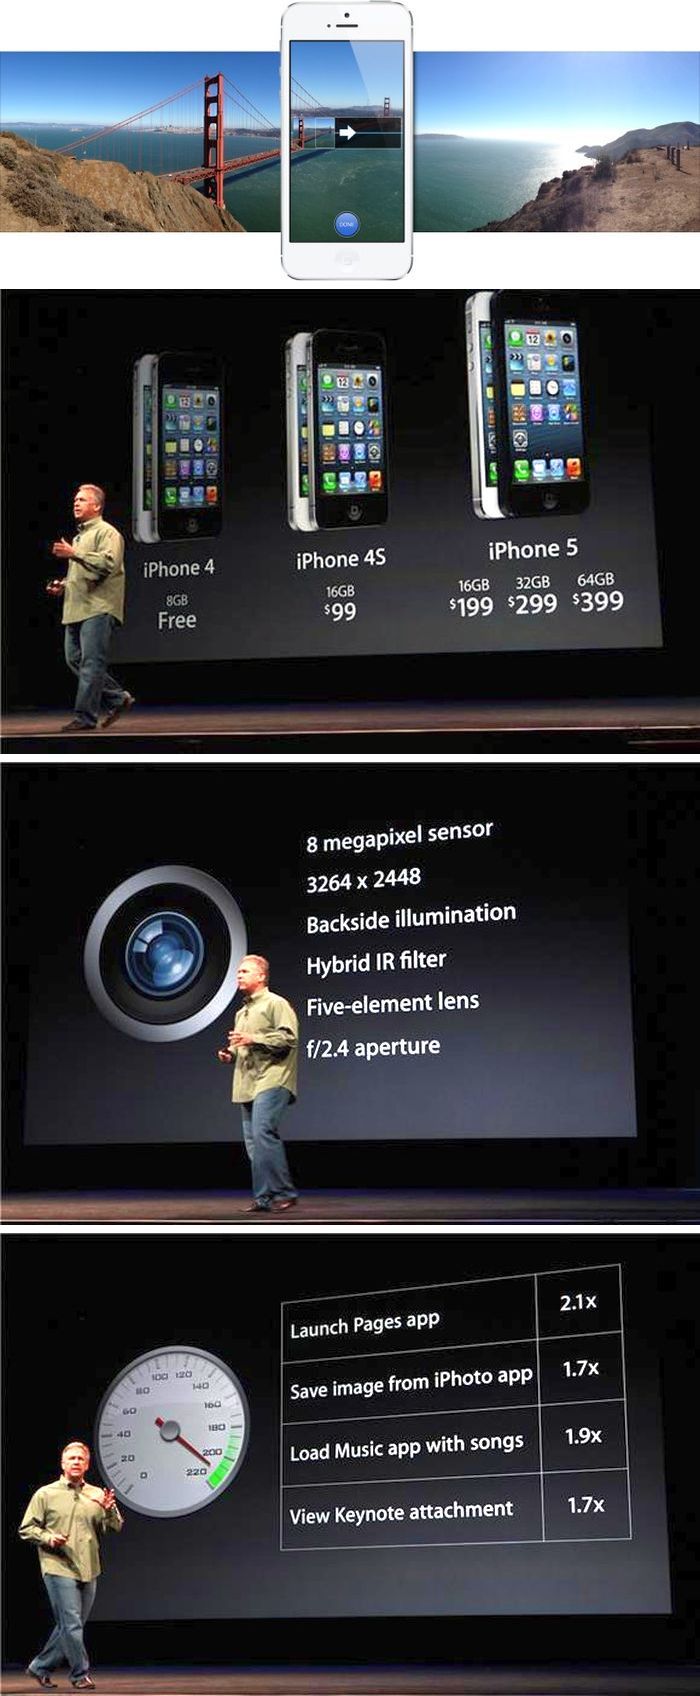 Itt az iPhone 5: A6 chipset, 4 colos kijelző